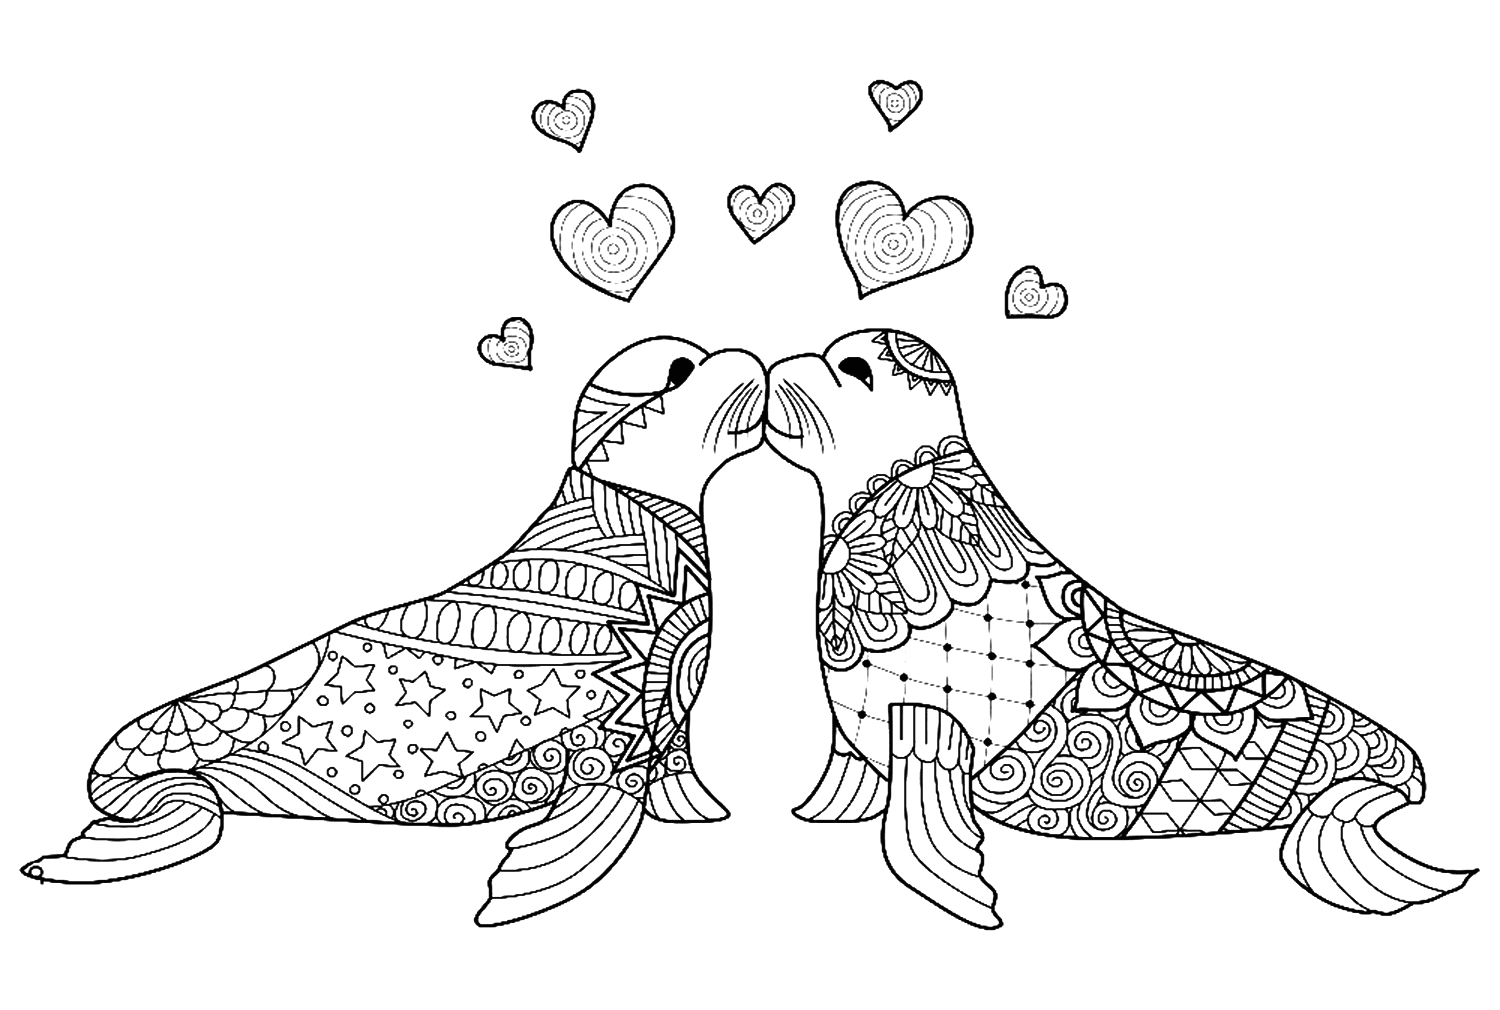 زوجان من أسد البحر Zentangle يقعان في الحب من حيوان Zentangle